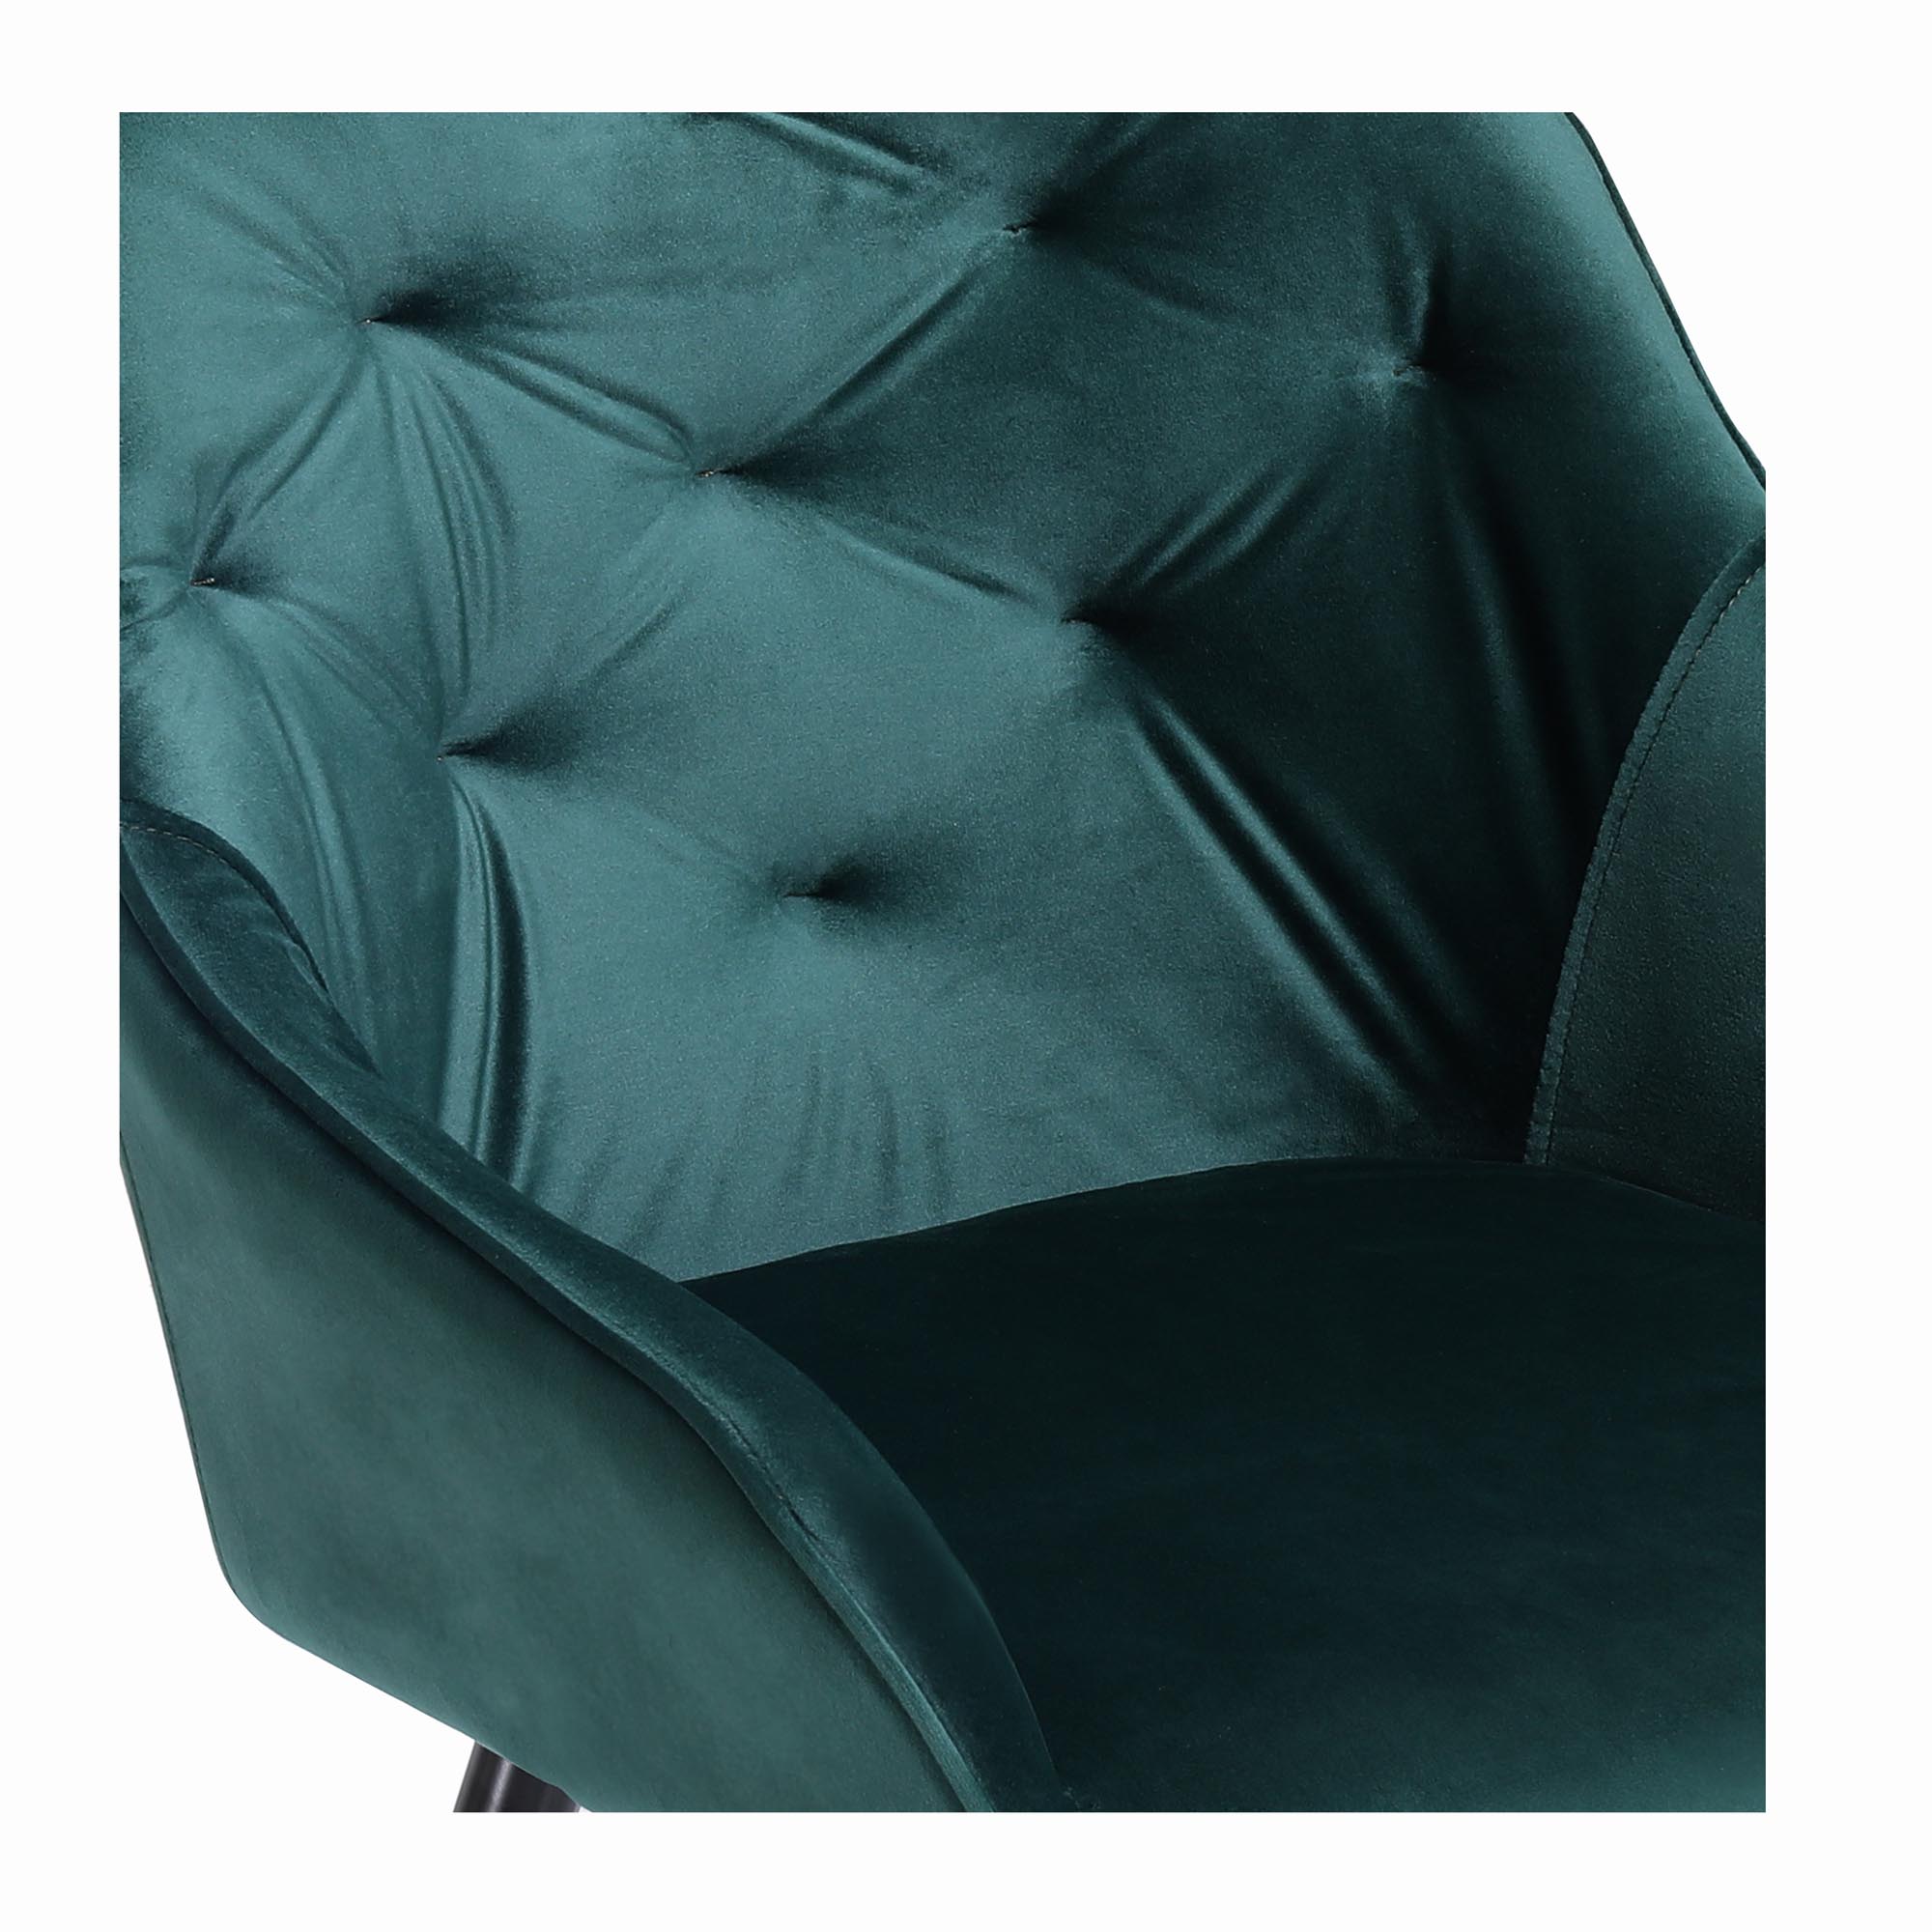 K487 jedálenská stolička tmavo zelená